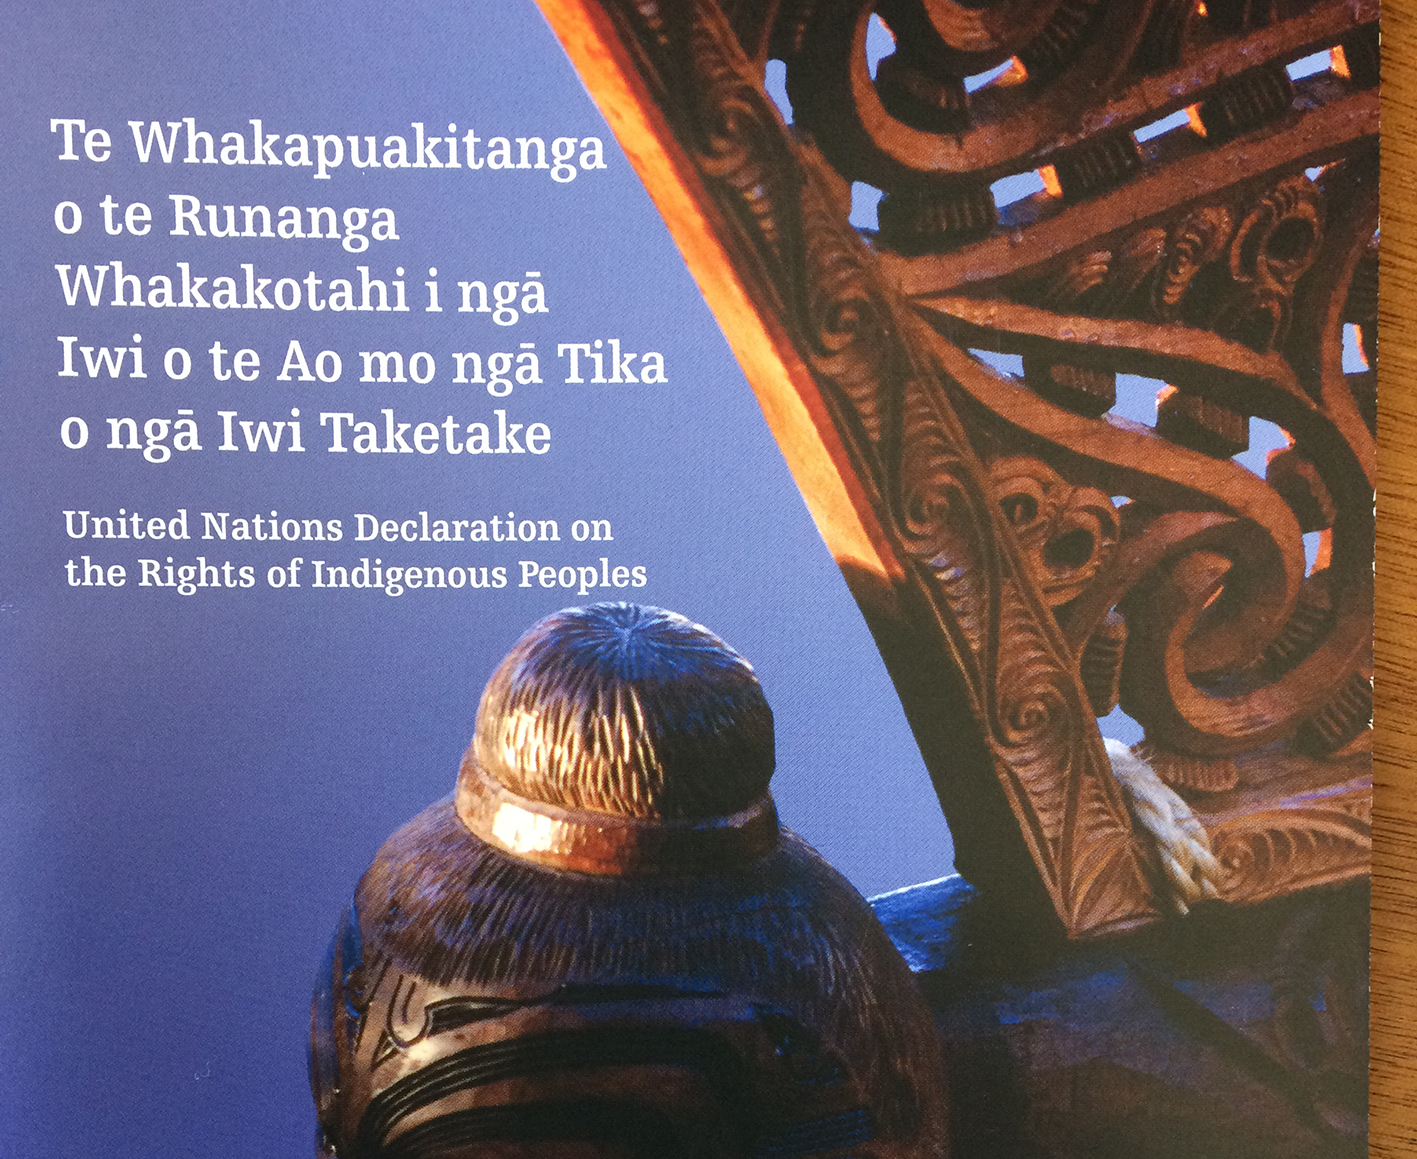 United Nations Declaration on the Rights of Indigenous Peoples Te Whakapuakitanga o te Runanga Whakakotahi i ngä Iwi o te Ao mo ngä Tika o ngä Iwi Taketake